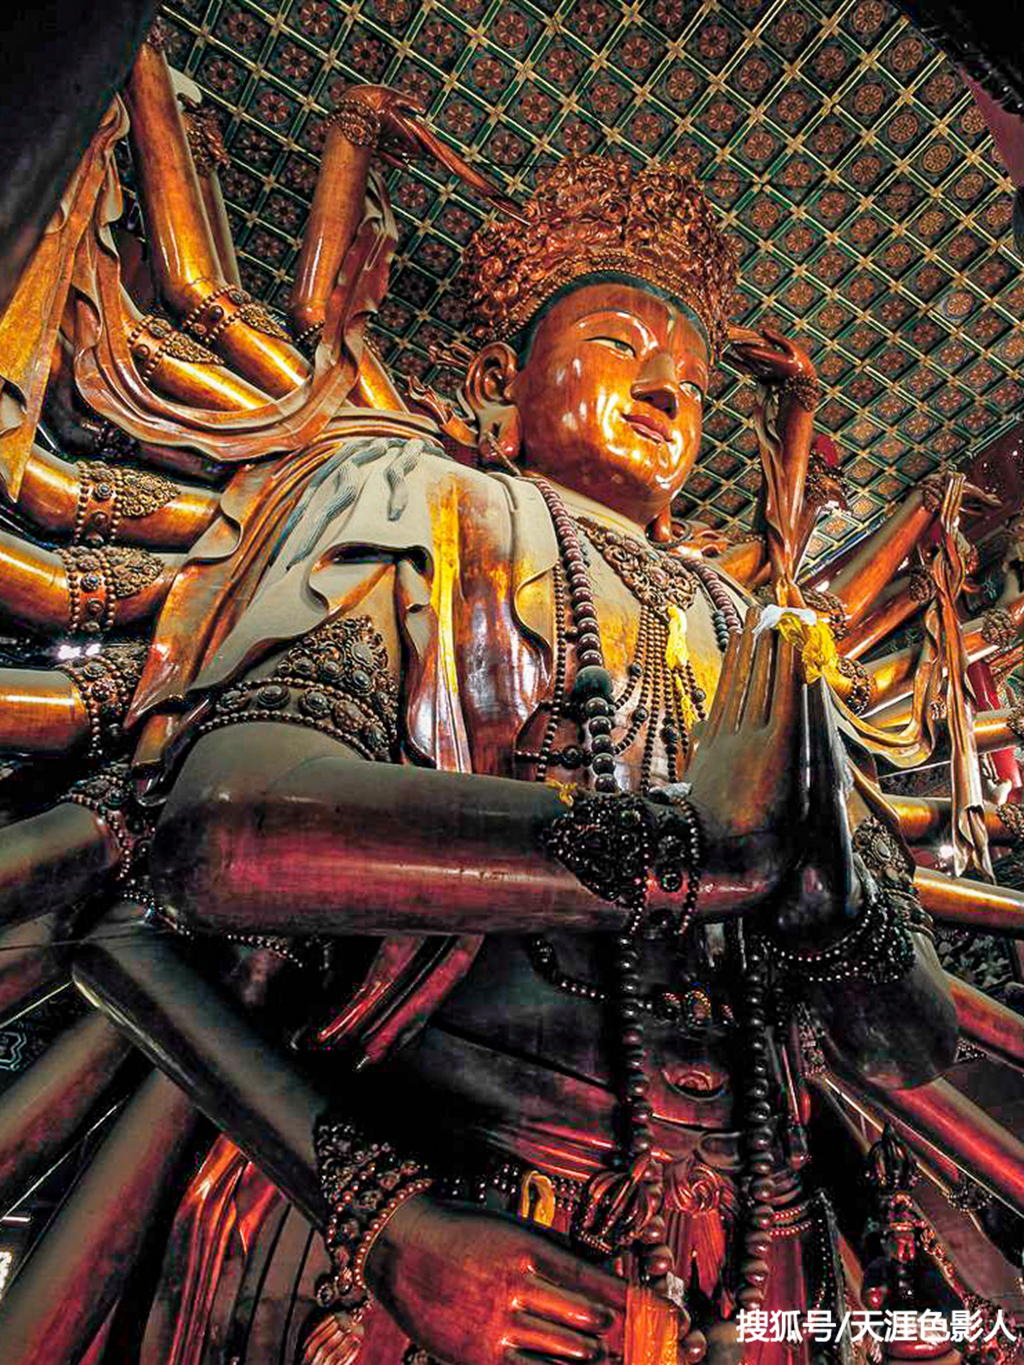 世界上最大的木雕佛像,已载入吉尼斯世界纪录,但不在雍和宫